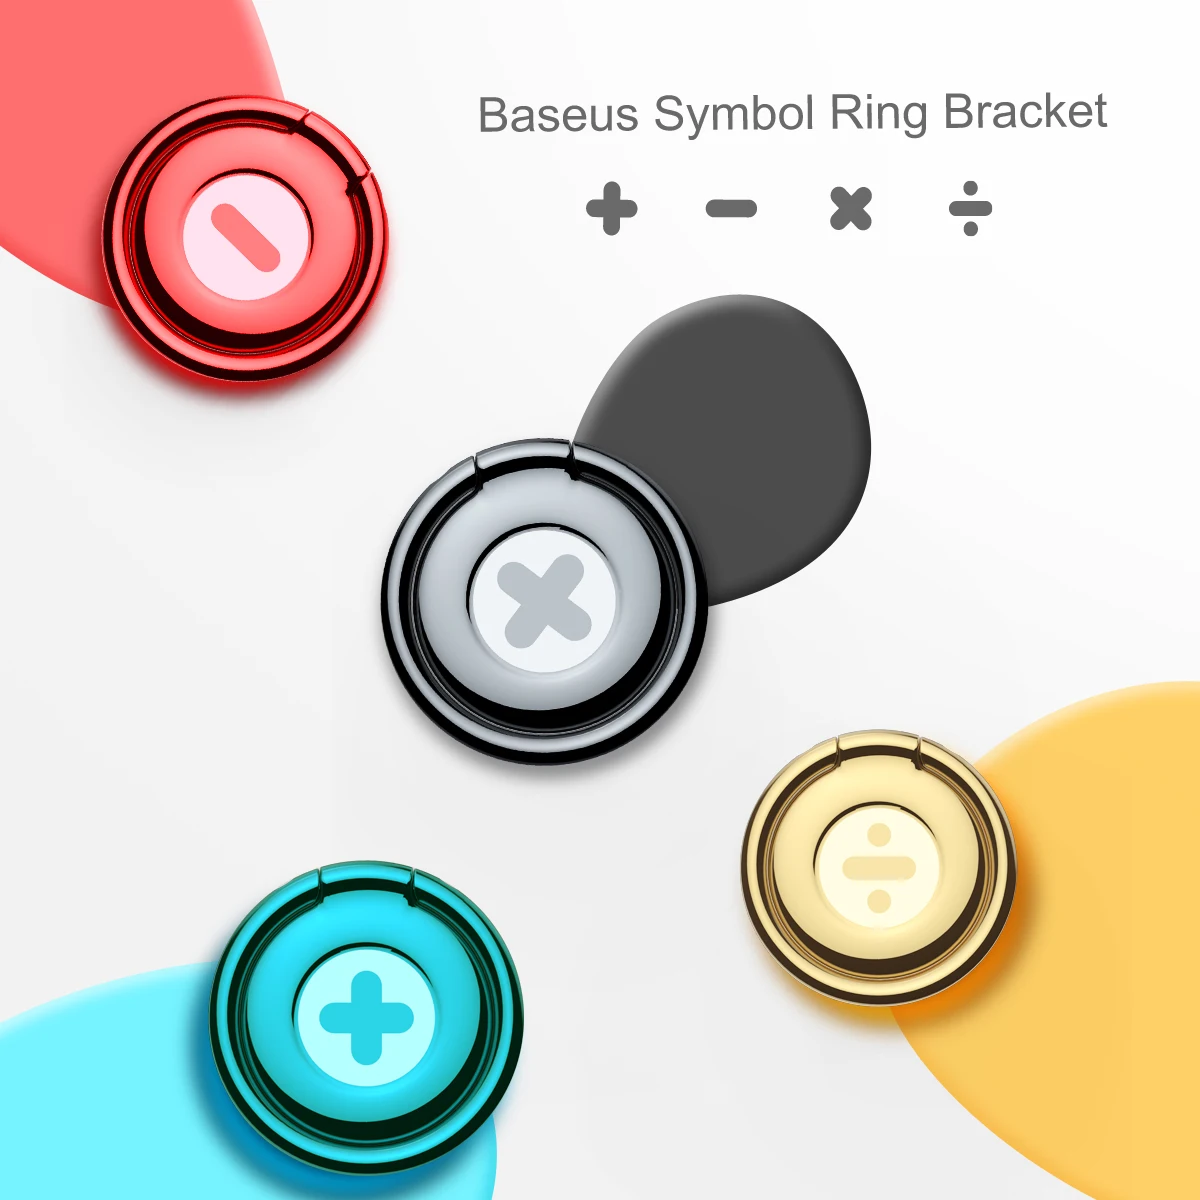 Baseus универсальный символ крепление в виде кольца на палец 360 градусов держатель мобильного телефона Подставка для iPhone 7 6 6s samsung Xiaomi htc huawei